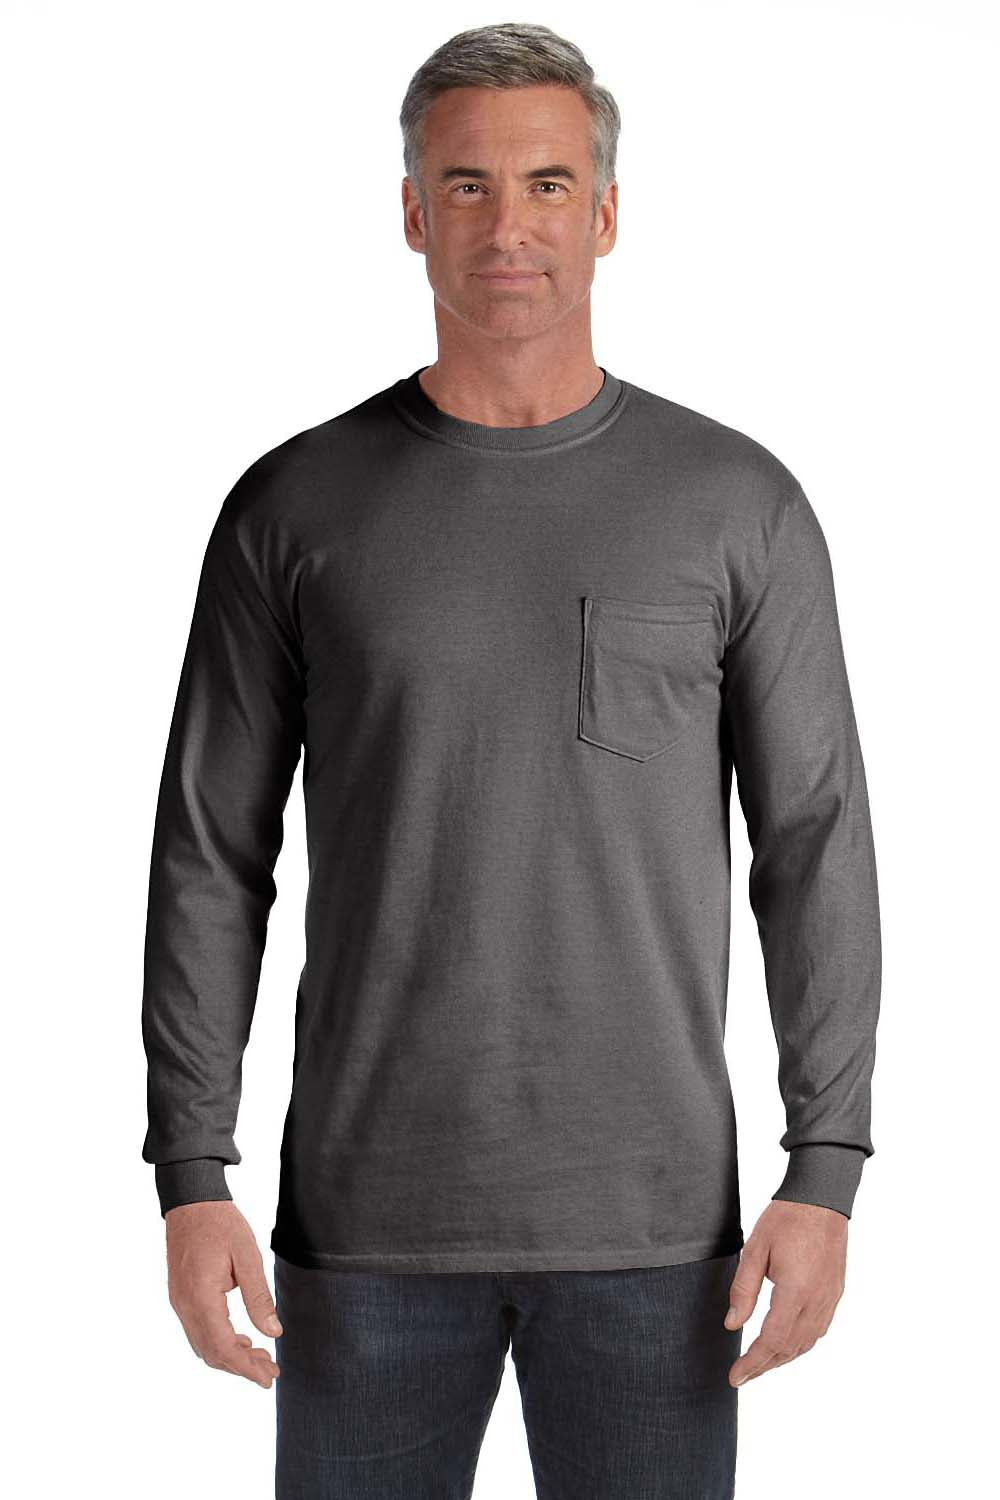 Comfort Colors C4410 Mens Long Sleeve Crewneck T-Shirt w/ Pocket Pepper Grey Front